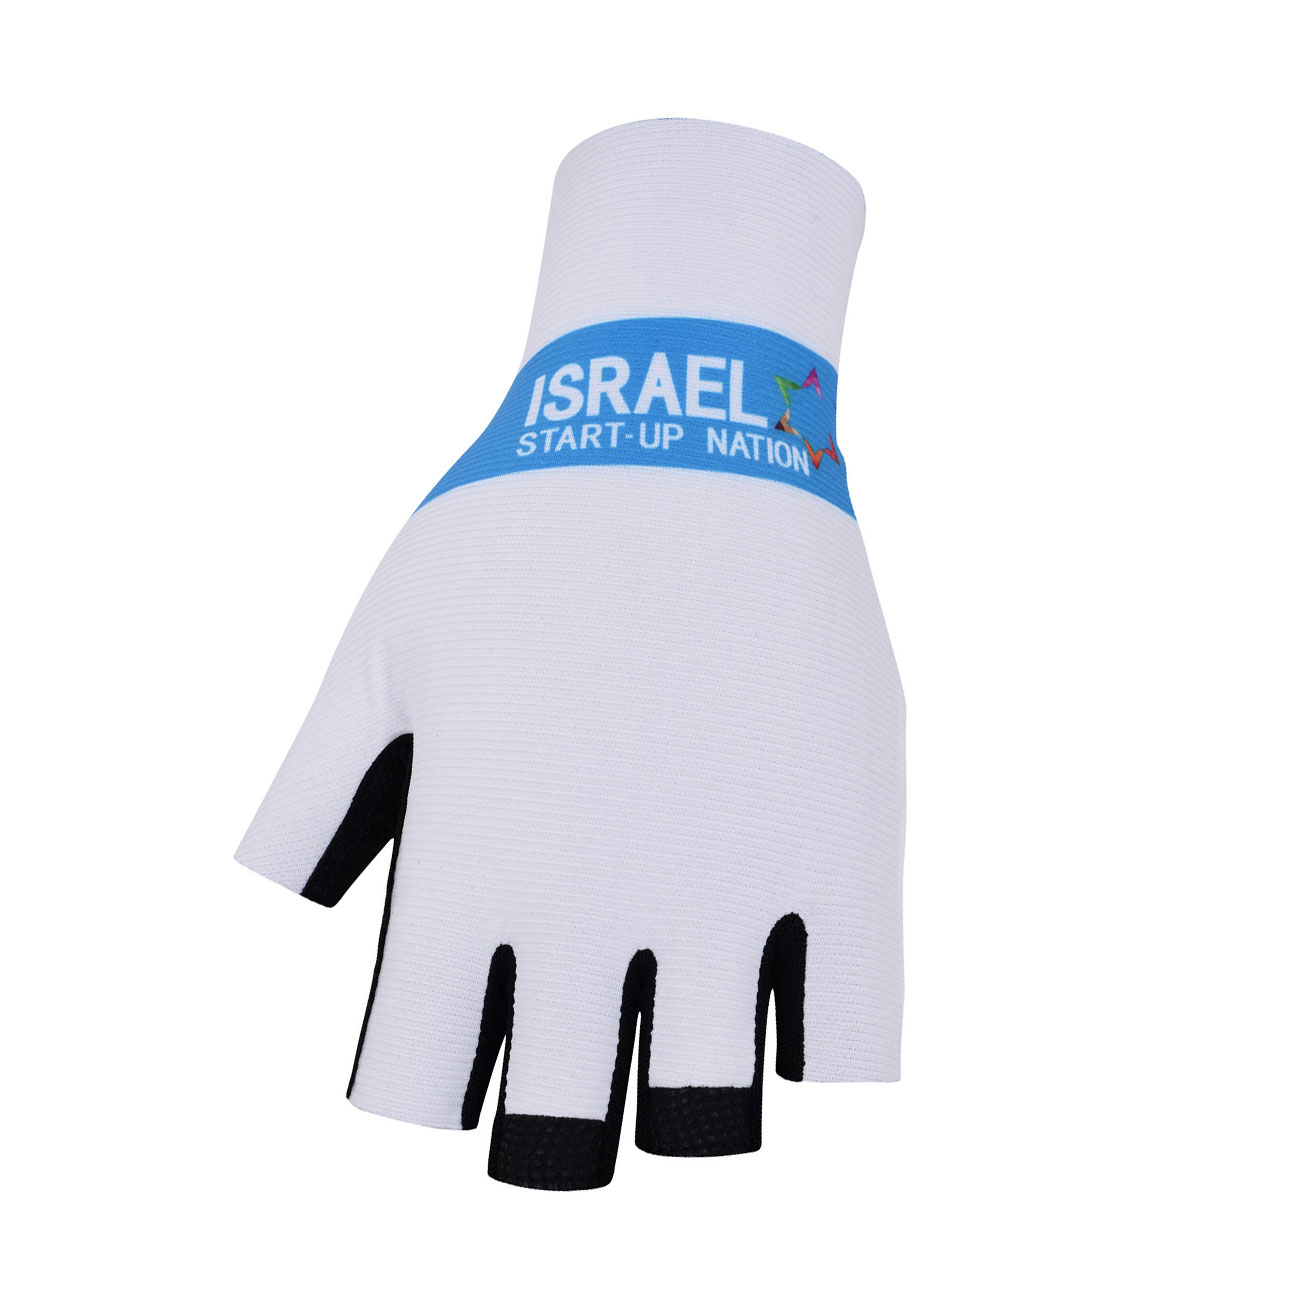 BONAVELO Kolarskie Rękawiczki Z Krótkimi Palcami - ISRAEL 2020 - Biały/niebieski